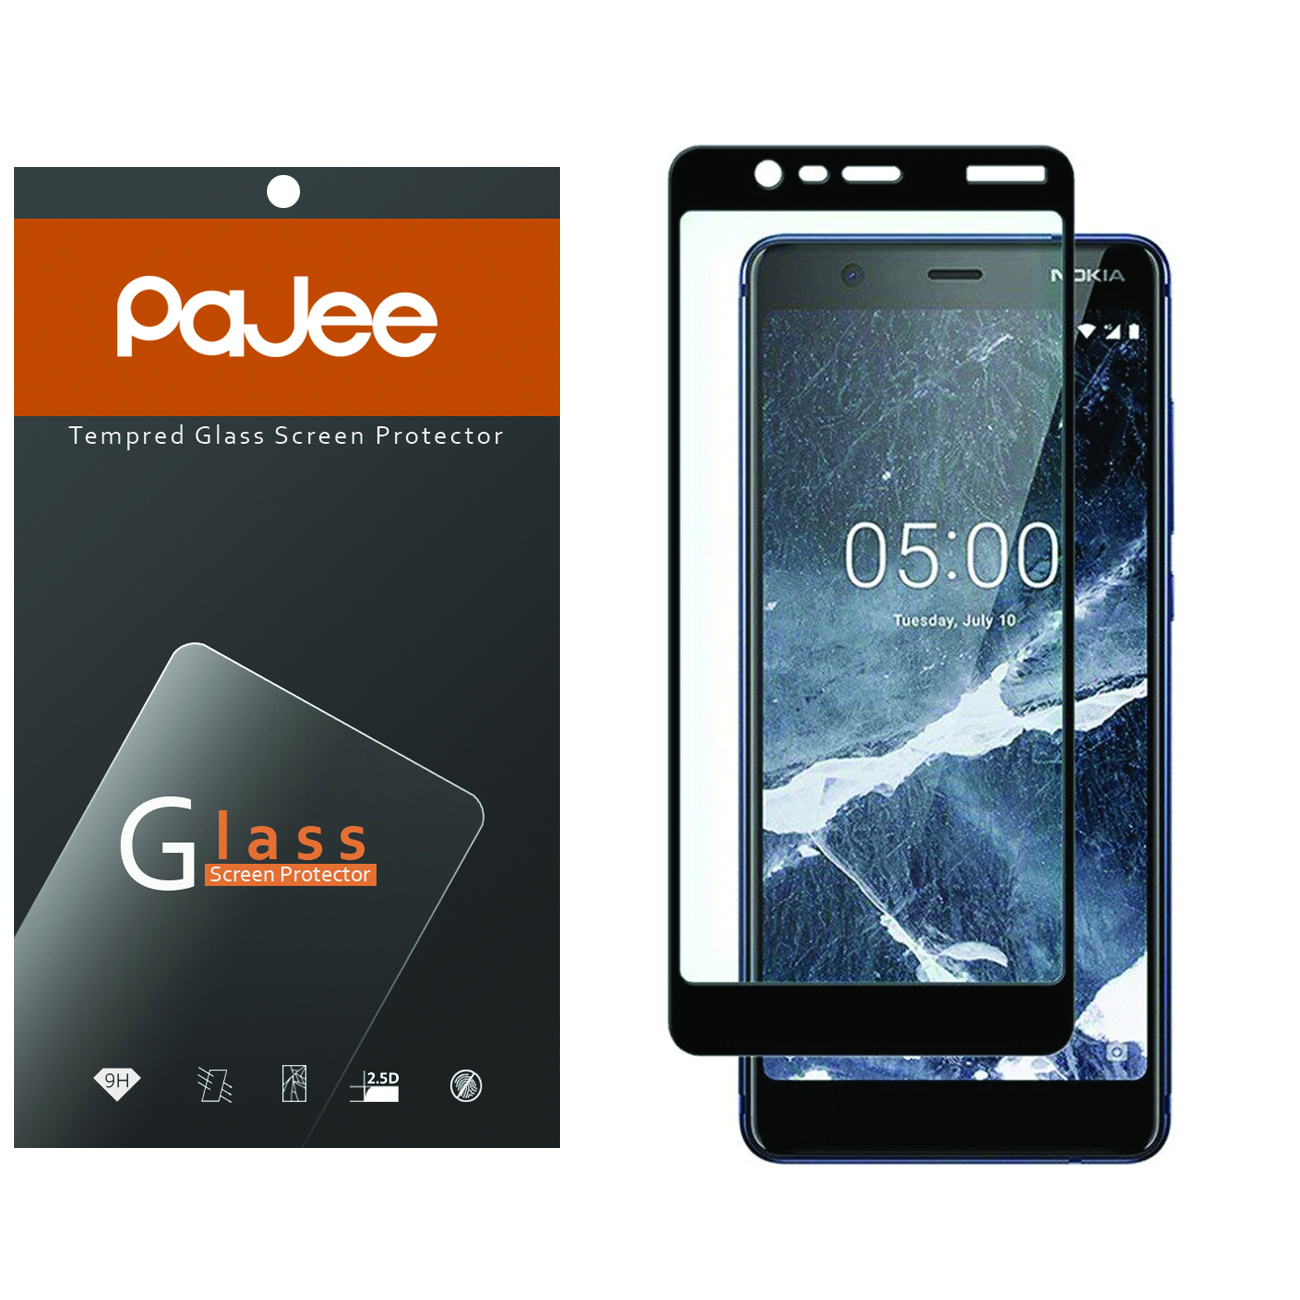 محافظ صفحه نمایش پاجی مدل P-N5 مناسب برای گوشی موبایل نوکیا 5.1